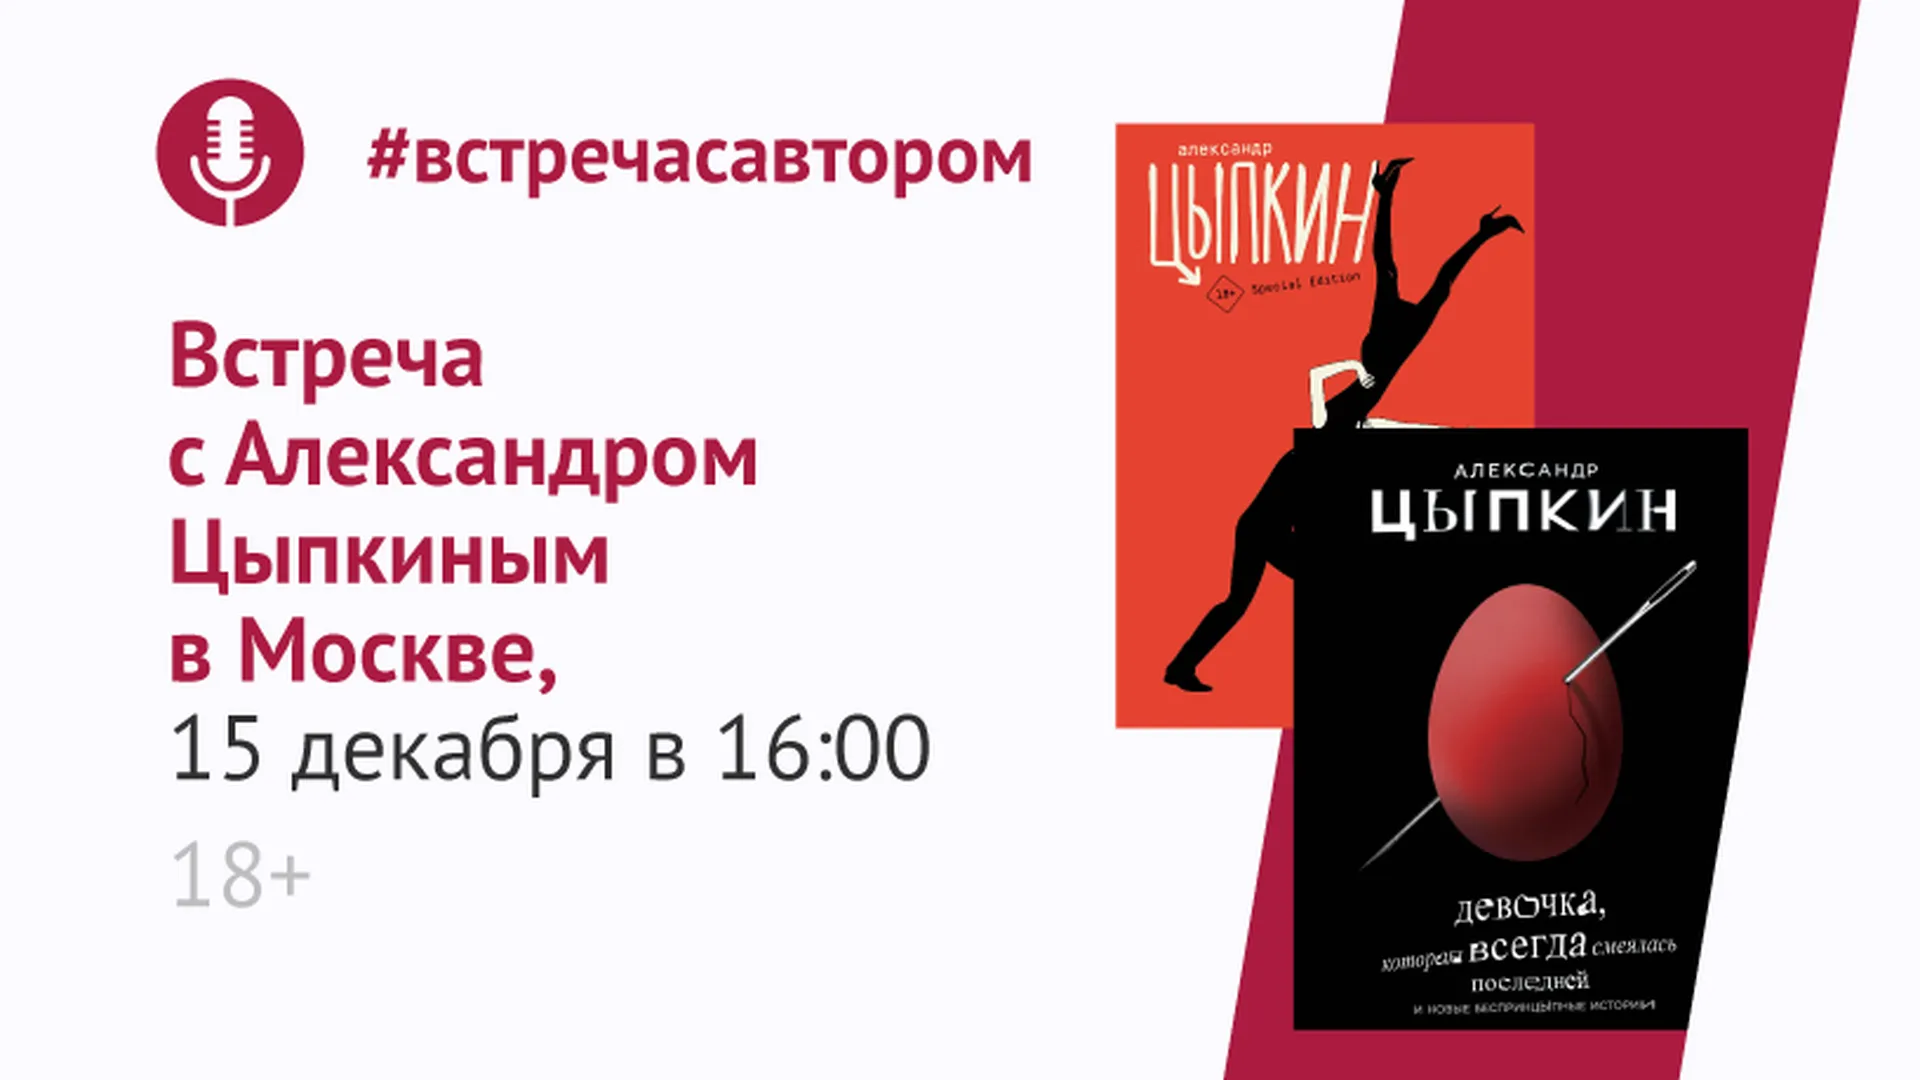 Писатель Александр Цыпкин презентует свои книги в Москве 15 декабря